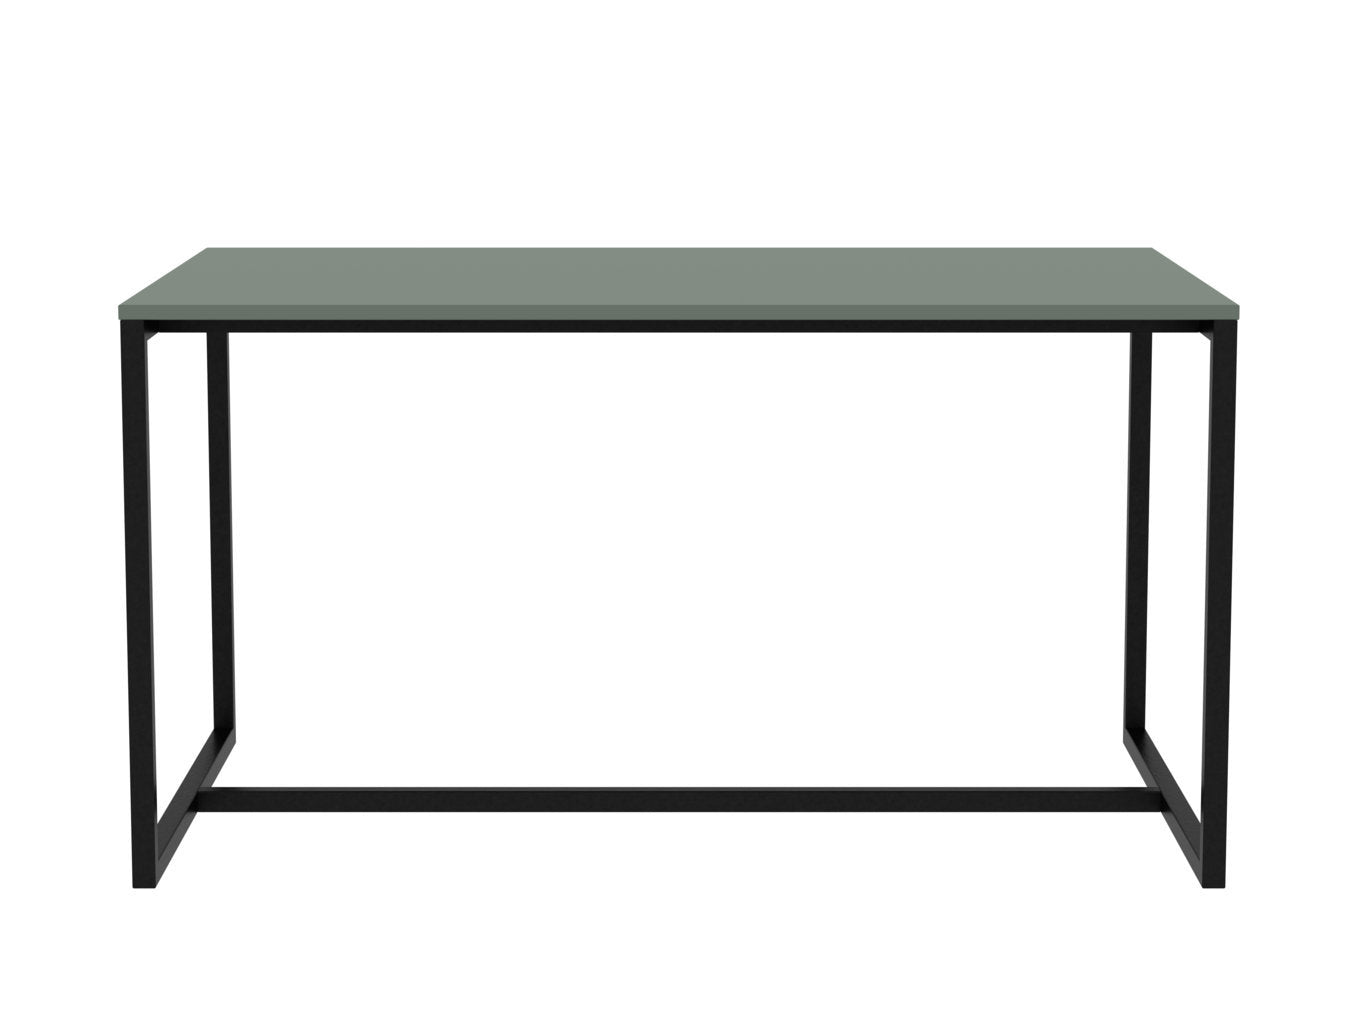 BESS grüner Tisch/Schreibtisch